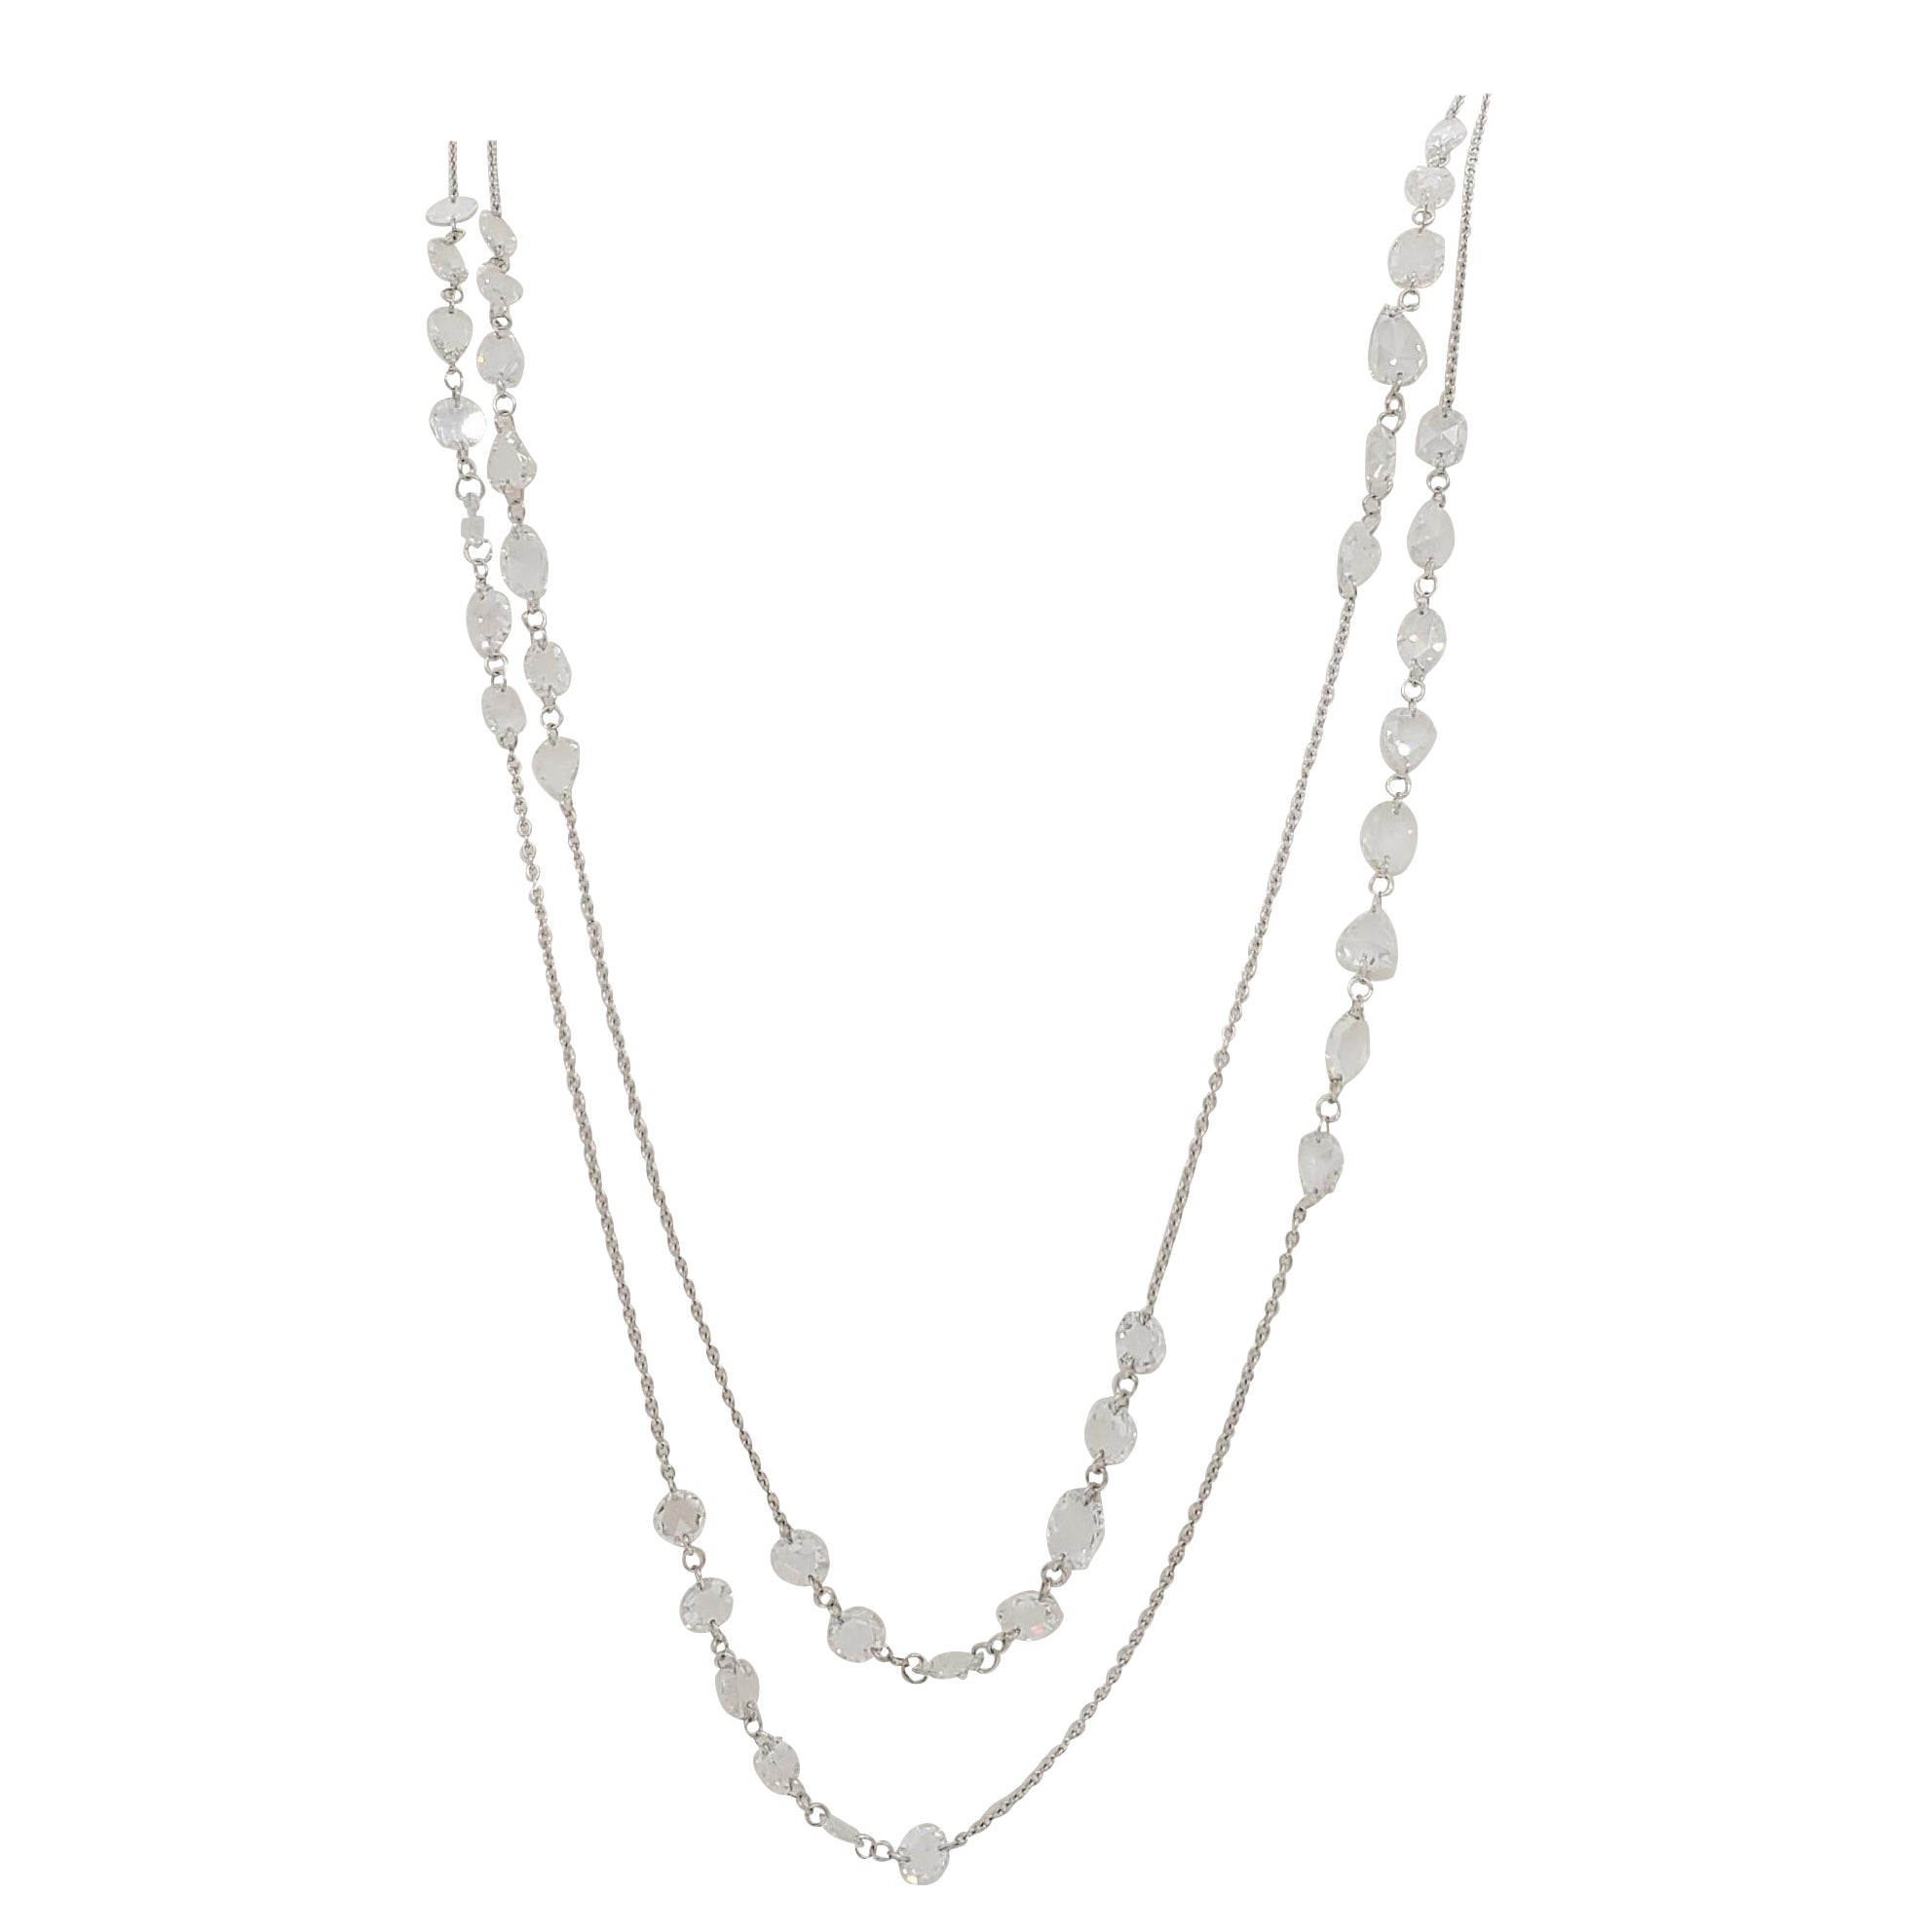 38.89 Carat Vintage Briolette Cut Diamond Necklace Set on 18K White ...